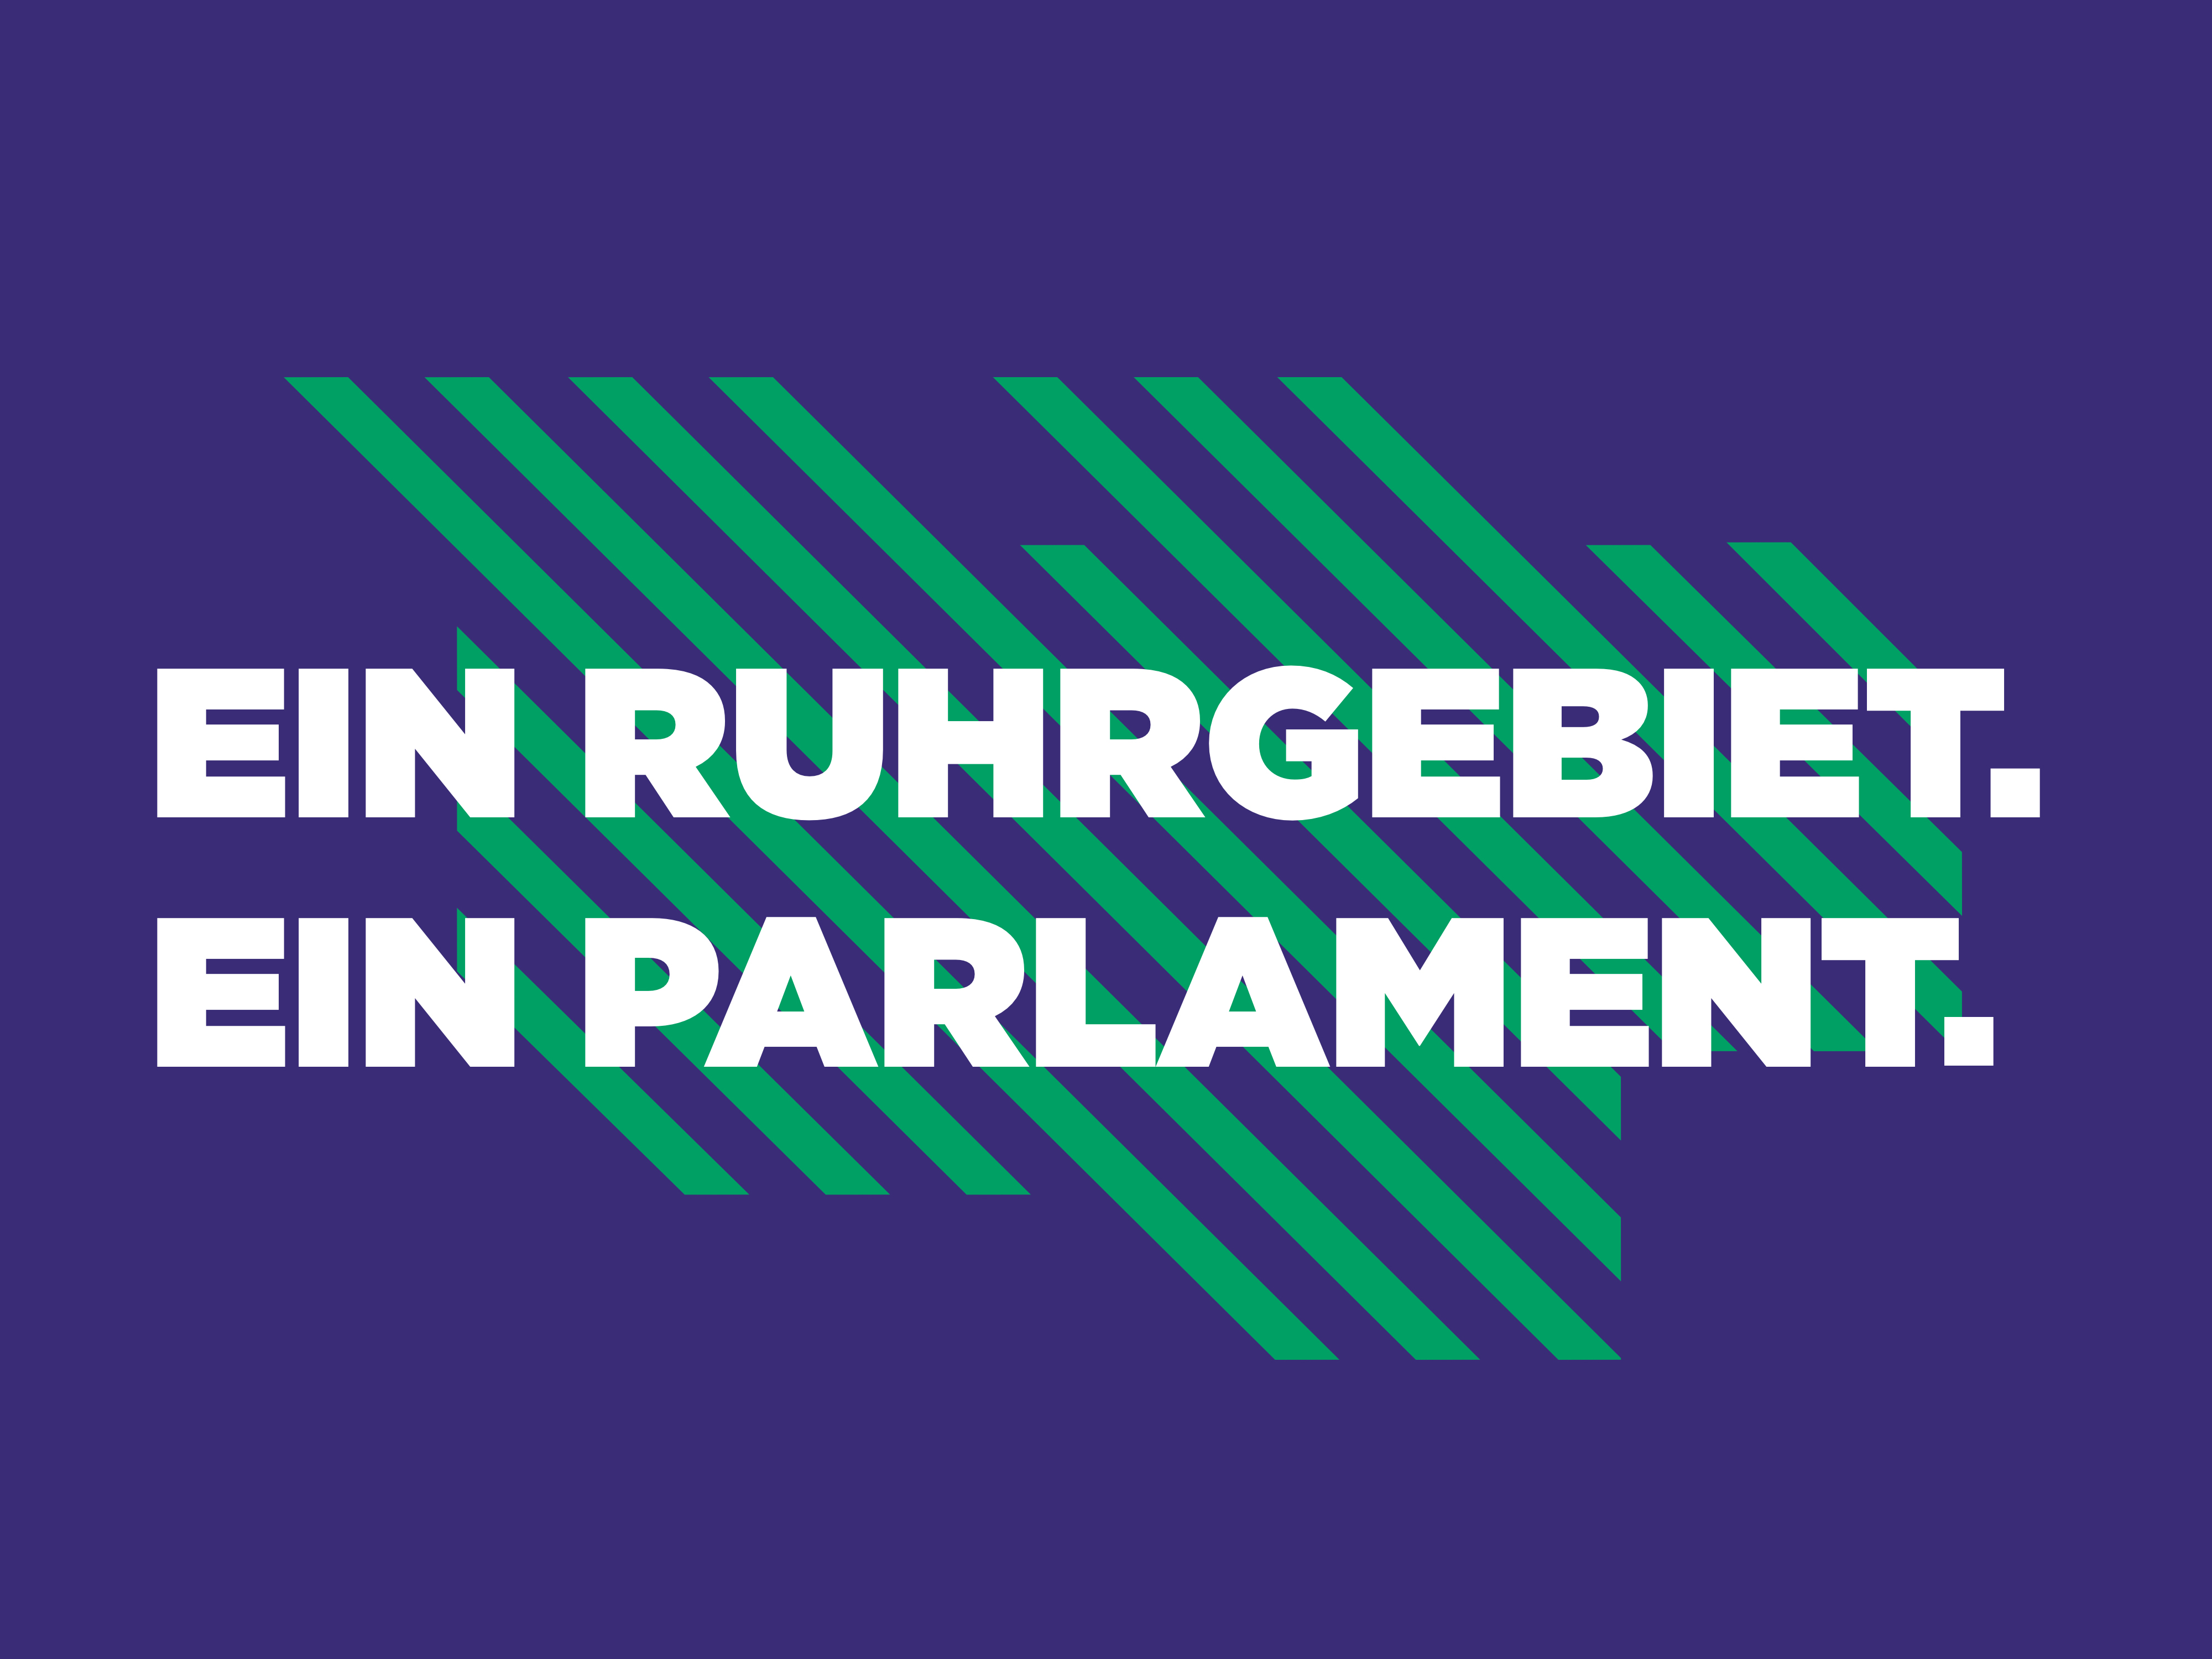 Grafik in lila mit dem Slogan "Ein Ruhrgebiet. Ein Ruhrparlament."